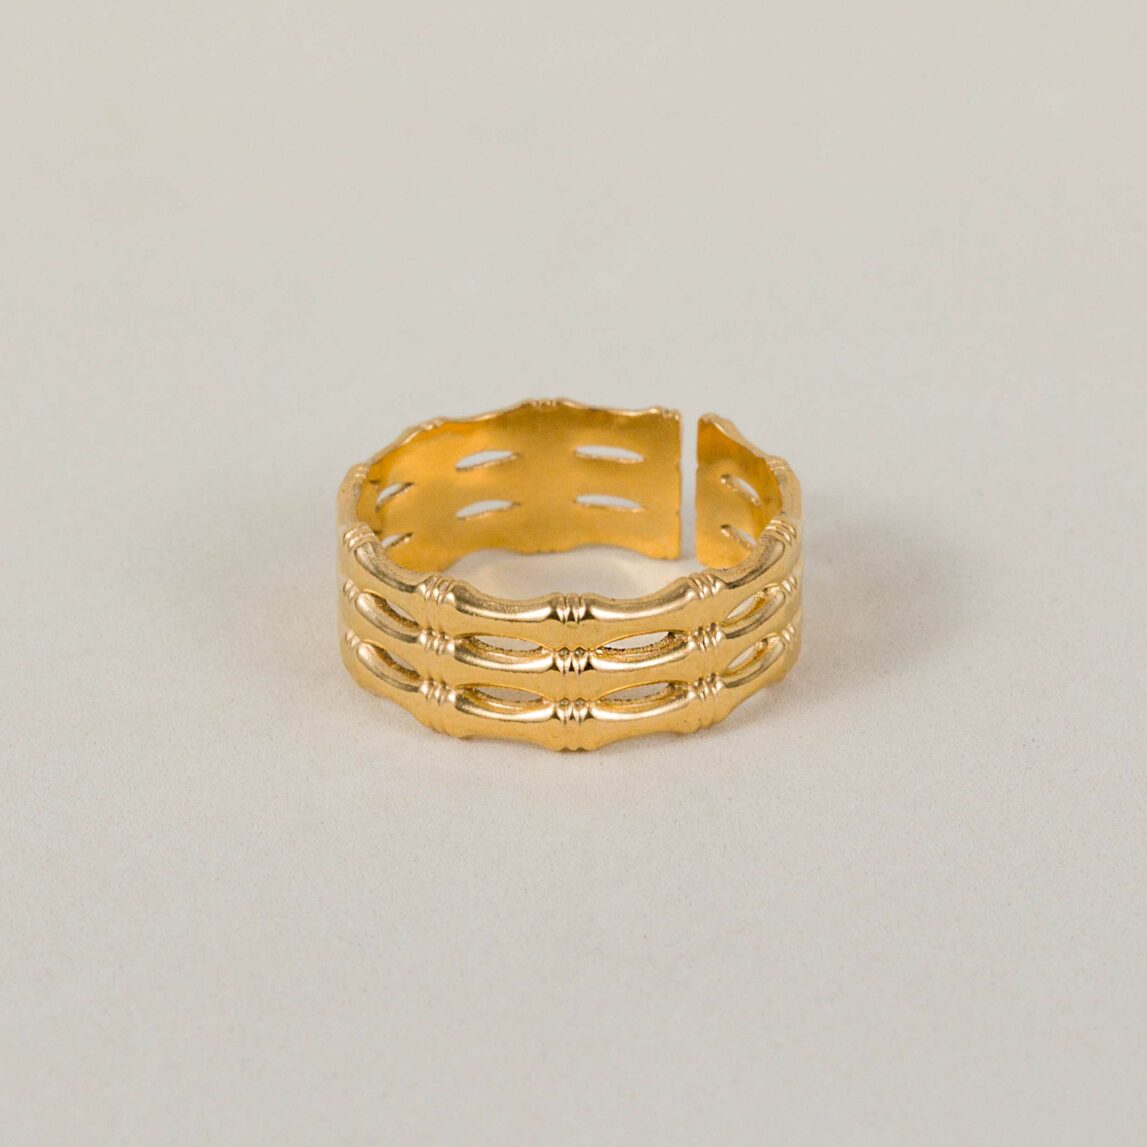 El anillo triple bambú es perfecto para ti que eres amante de las joyas clásicas y atemporales. Este anillo dorado ajustable es el best seller de la temporada